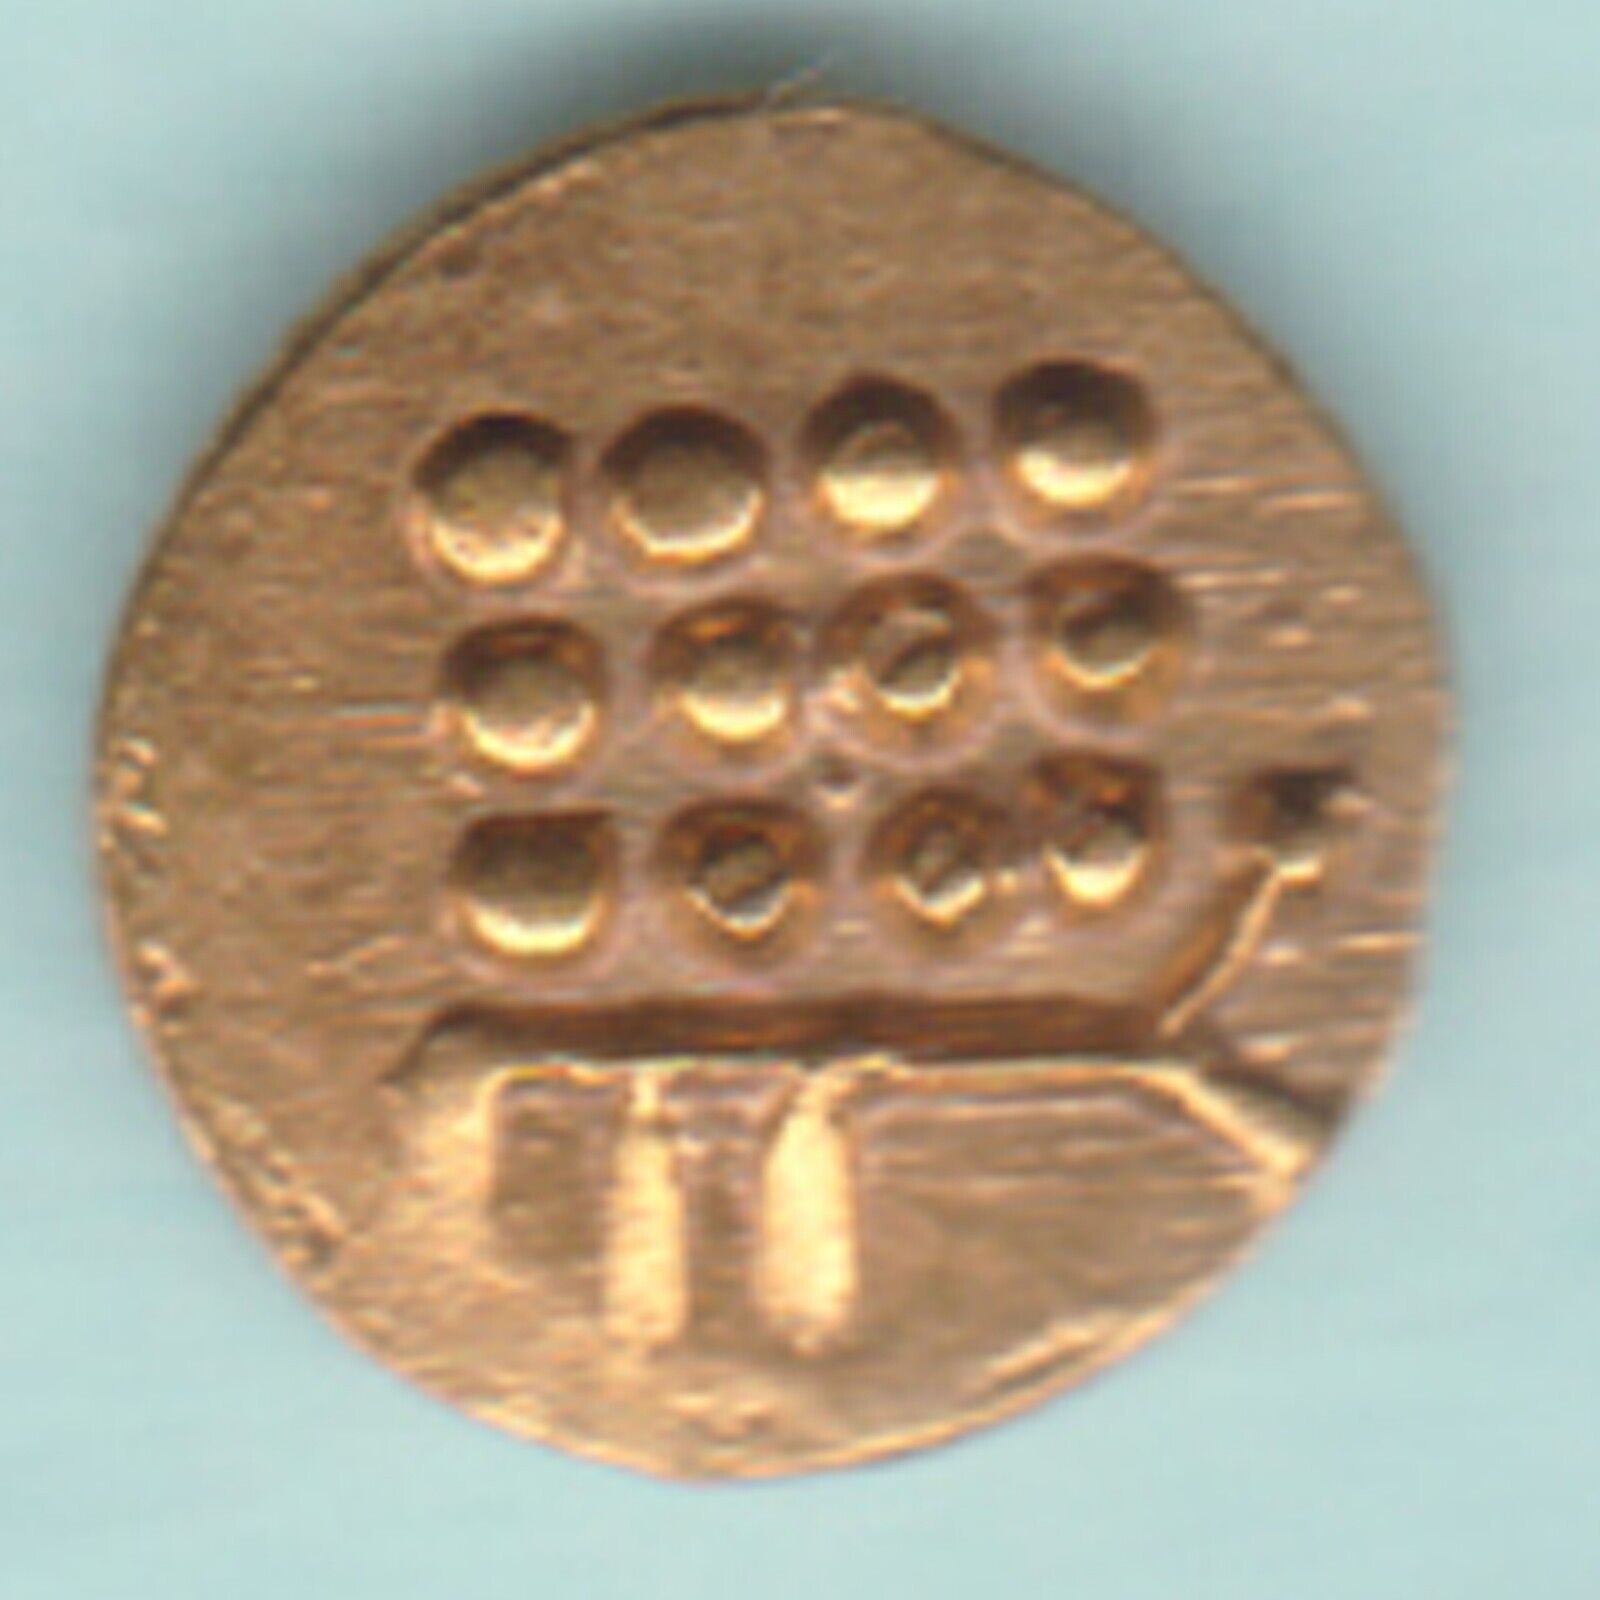 French India Cochin Gold Fanam Rare Small Coin